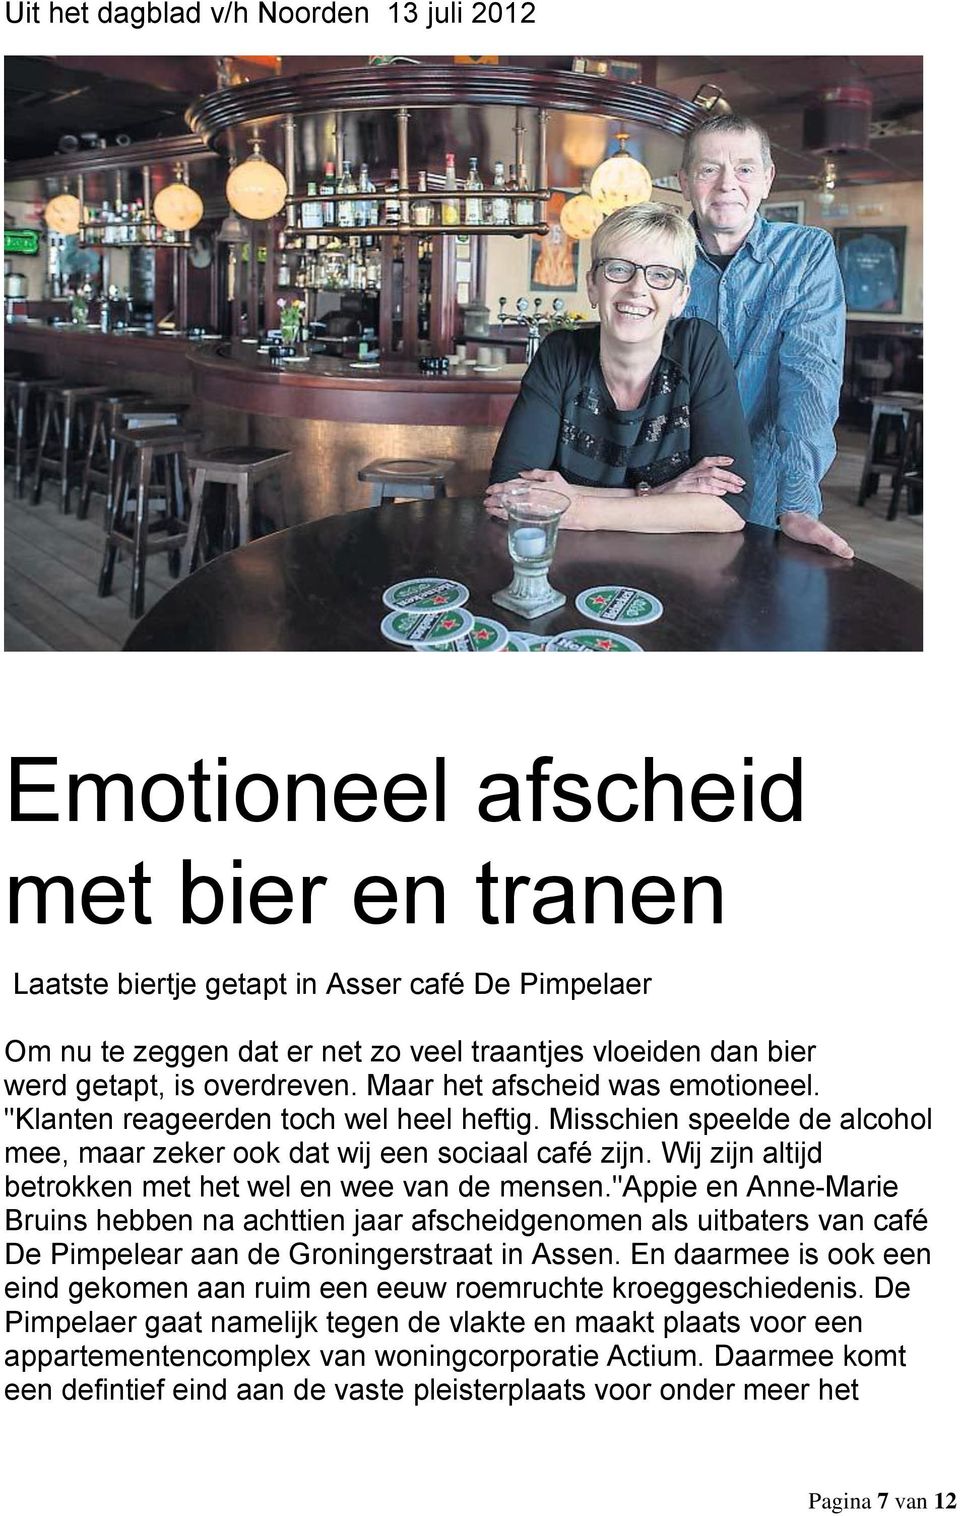 Wij zijn altijd betrokken met het wel en wee van de mensen."appie en Anne-Marie Bruins hebben na achttien jaar afscheidgenomen als uitbaters van café De Pimpelear aan de Groningerstraat in Assen.